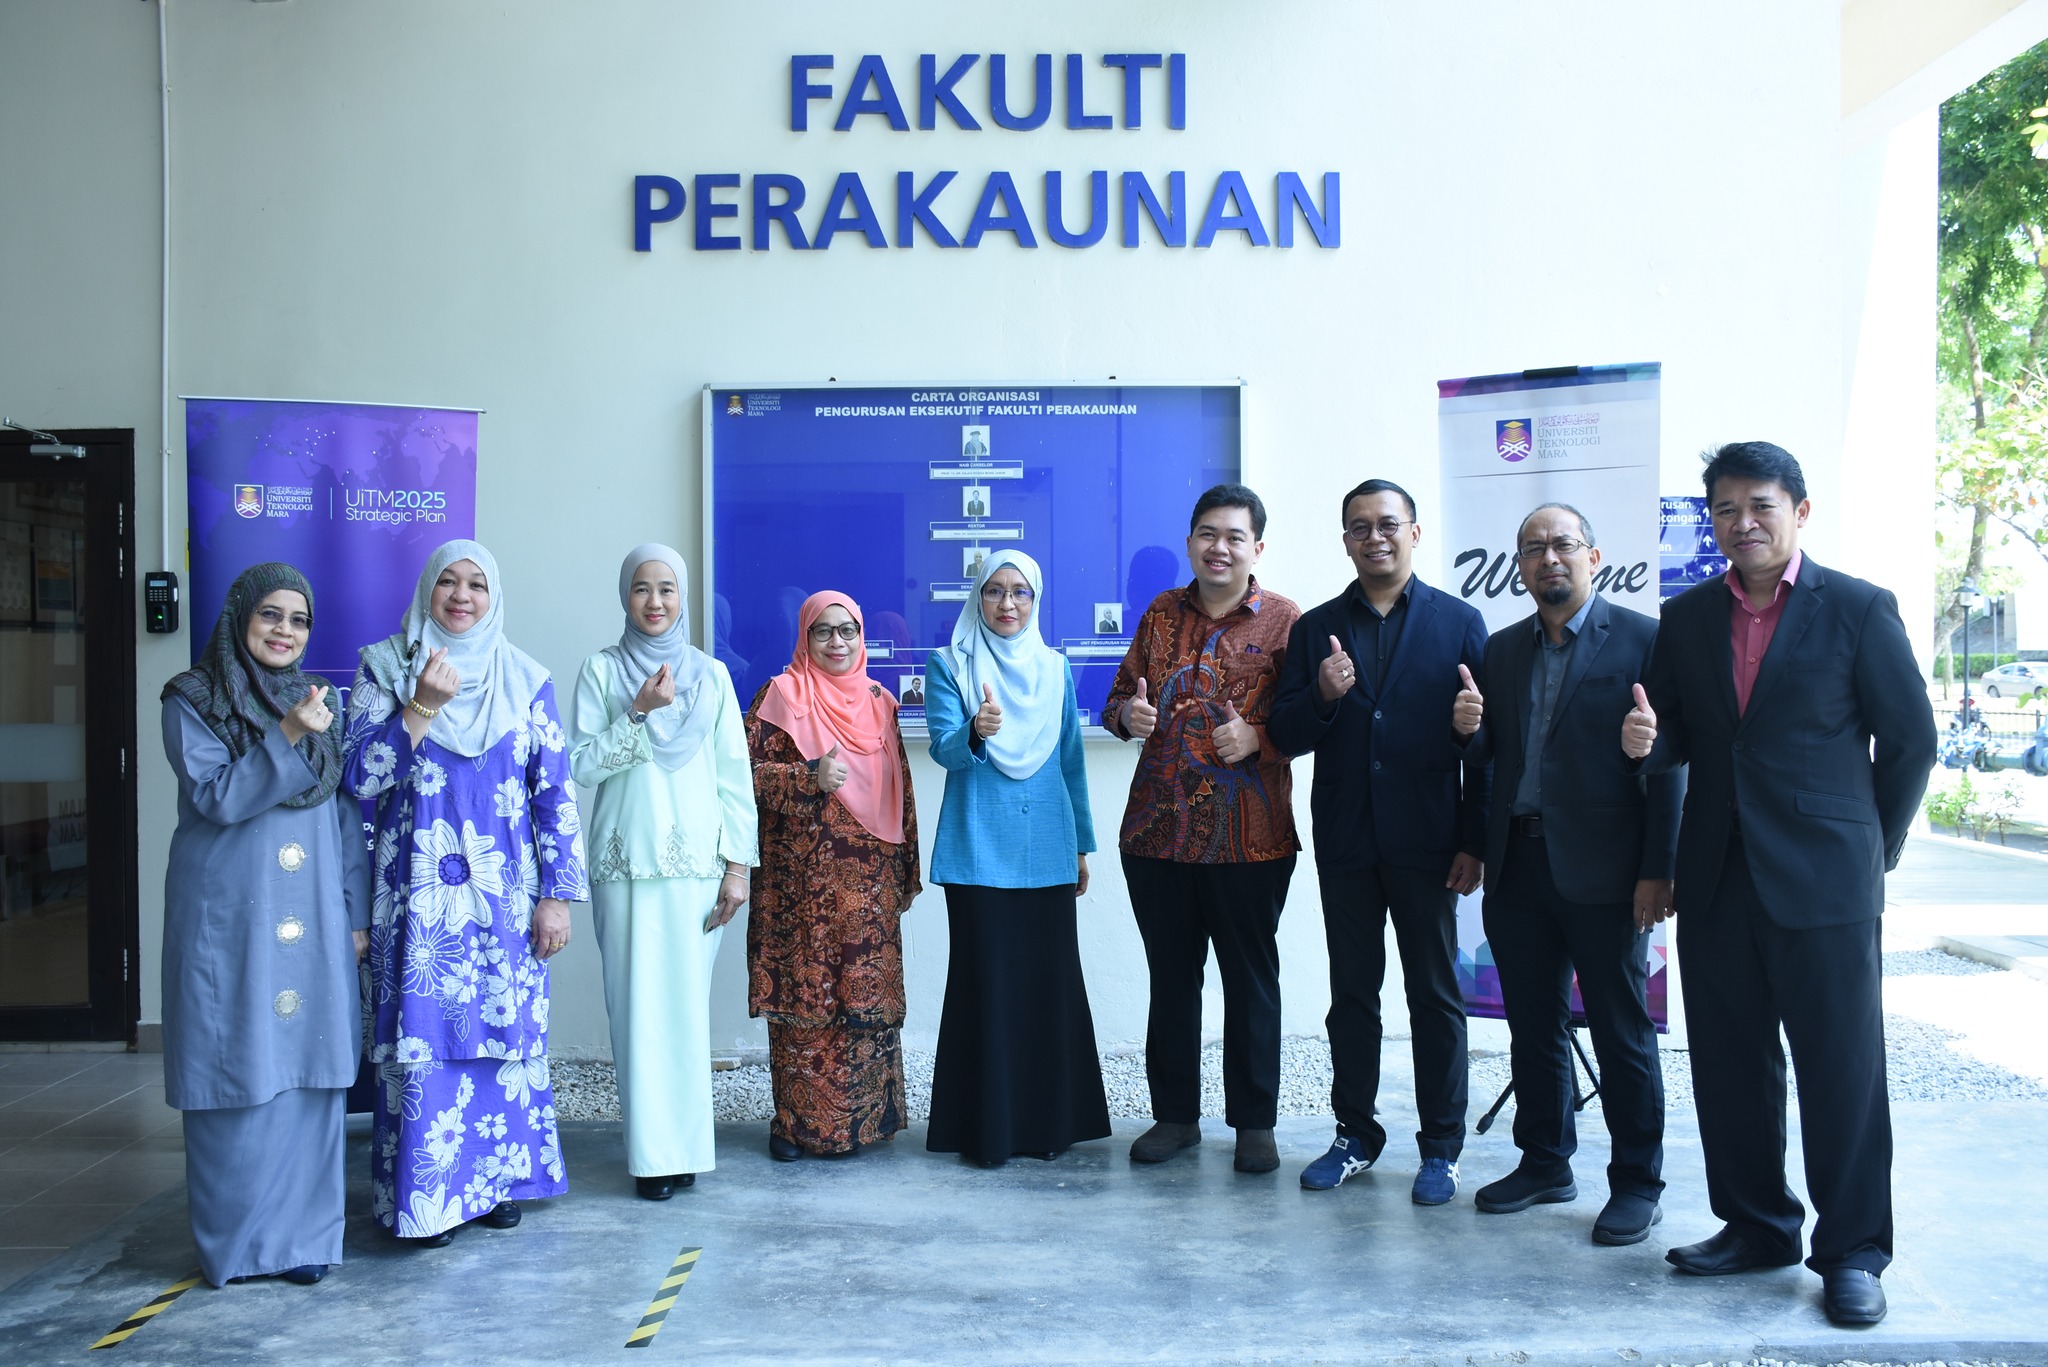 Perbincangan kerjasama antara Fakulti Perakaunan dan Universitas Padjadjaran, Indonesia